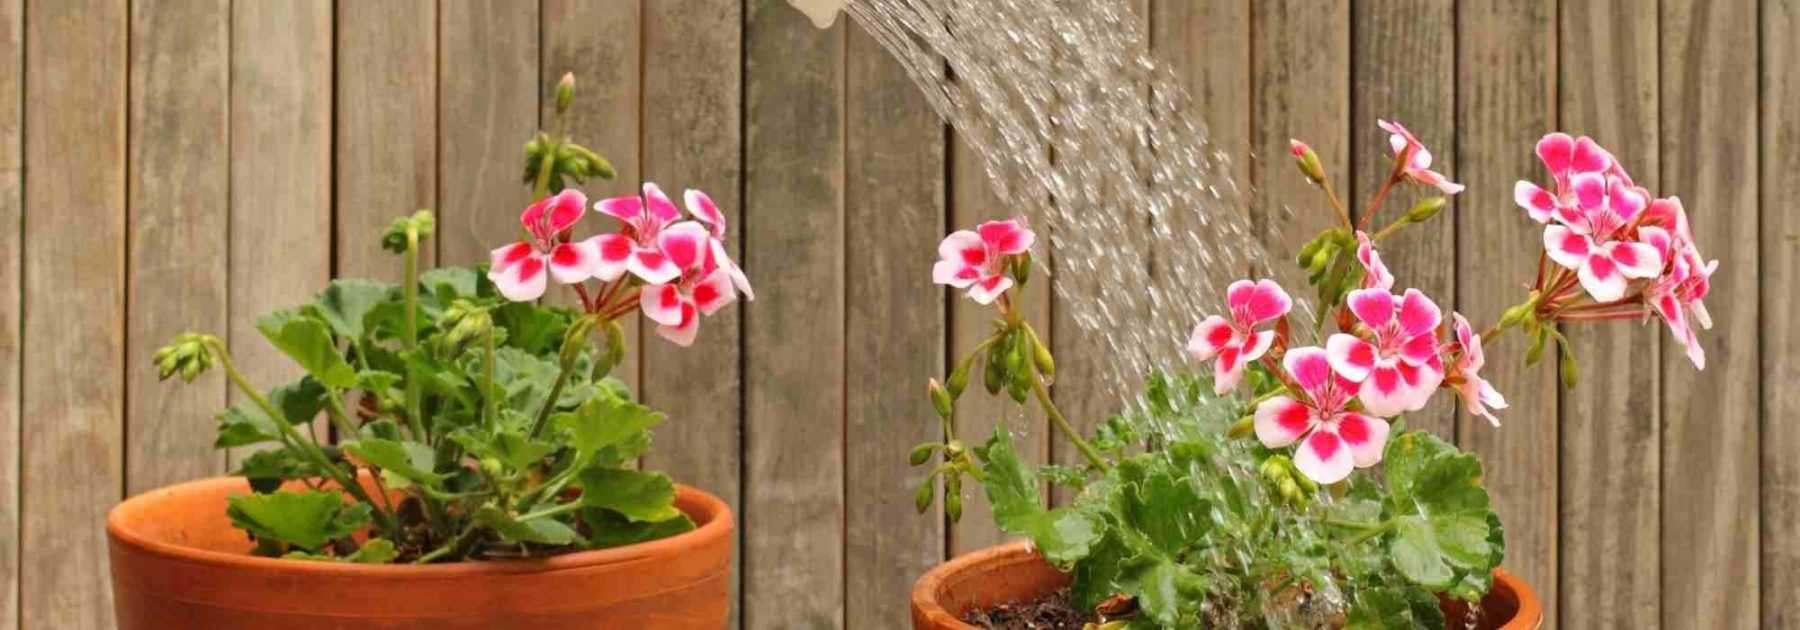 Vacances - Astuces pour arroser ses plantes pendant de longues absences -  Conseils Jardinage 